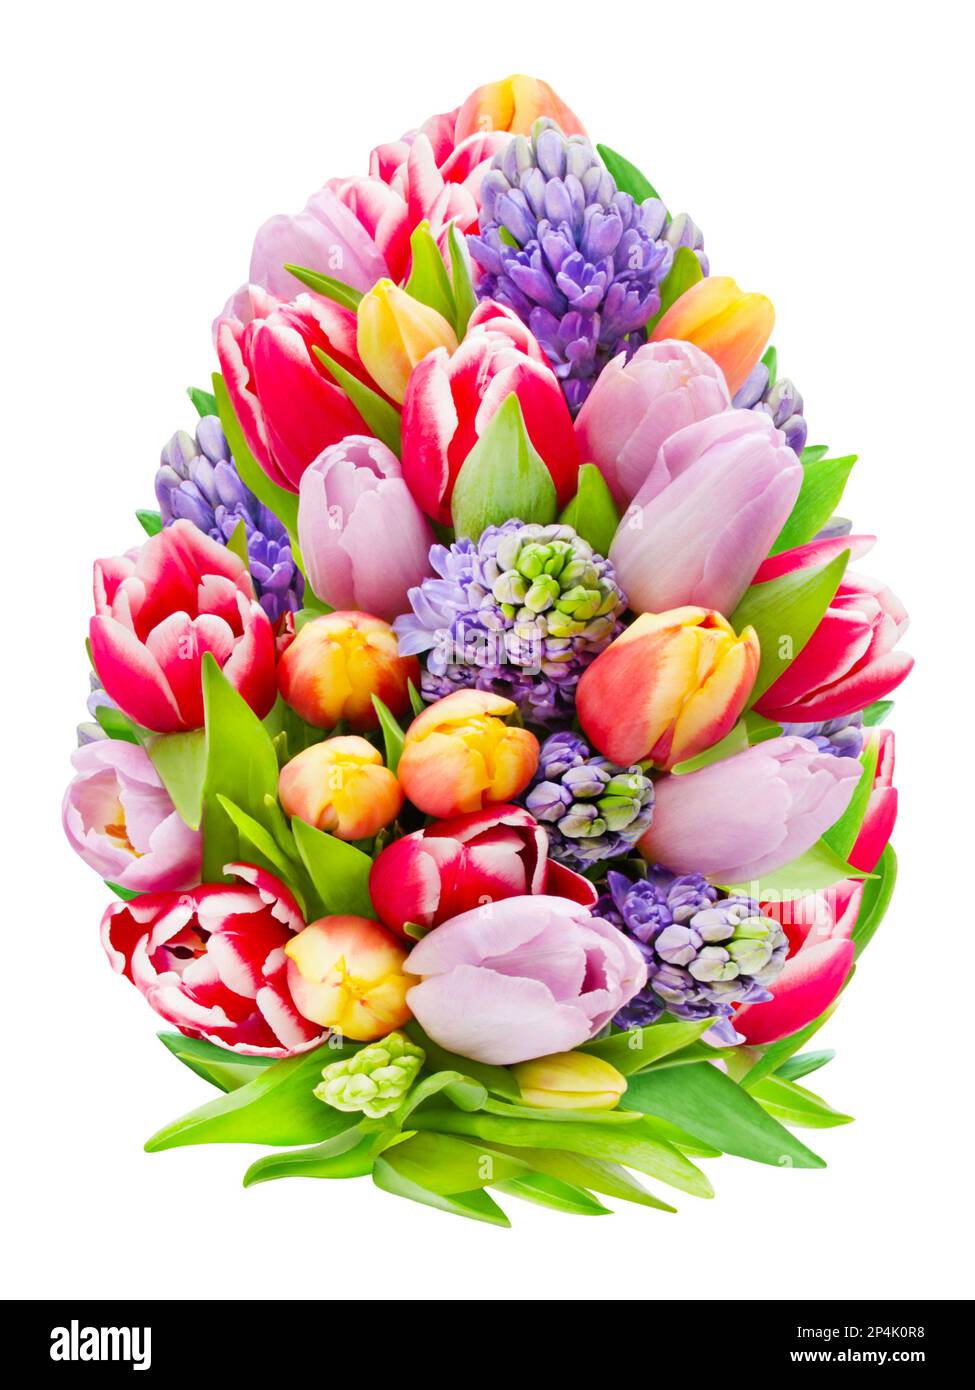 Décoration avec tulipes et jacinthes isolées sur fond blanc Banque D'Images